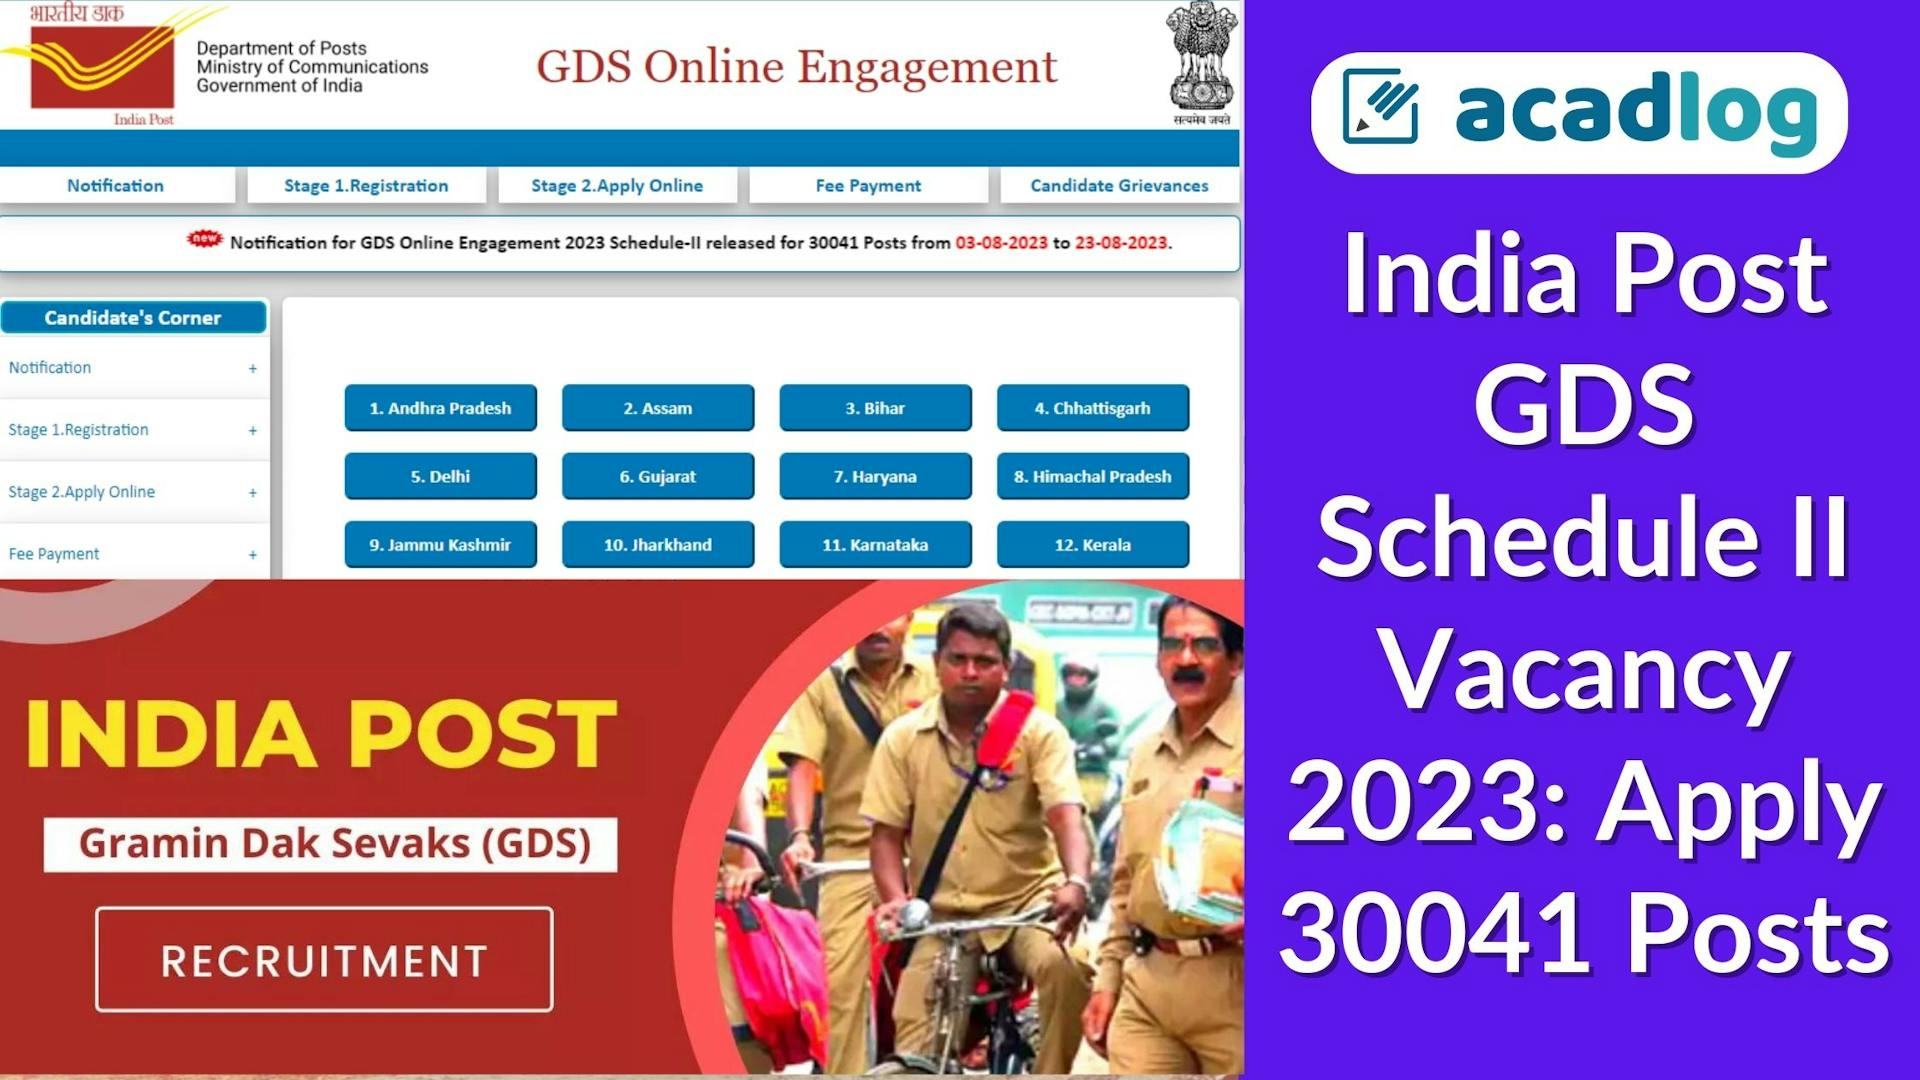 India Post GDS Schedule II Vacancy 2023: Apply 30041 Posts